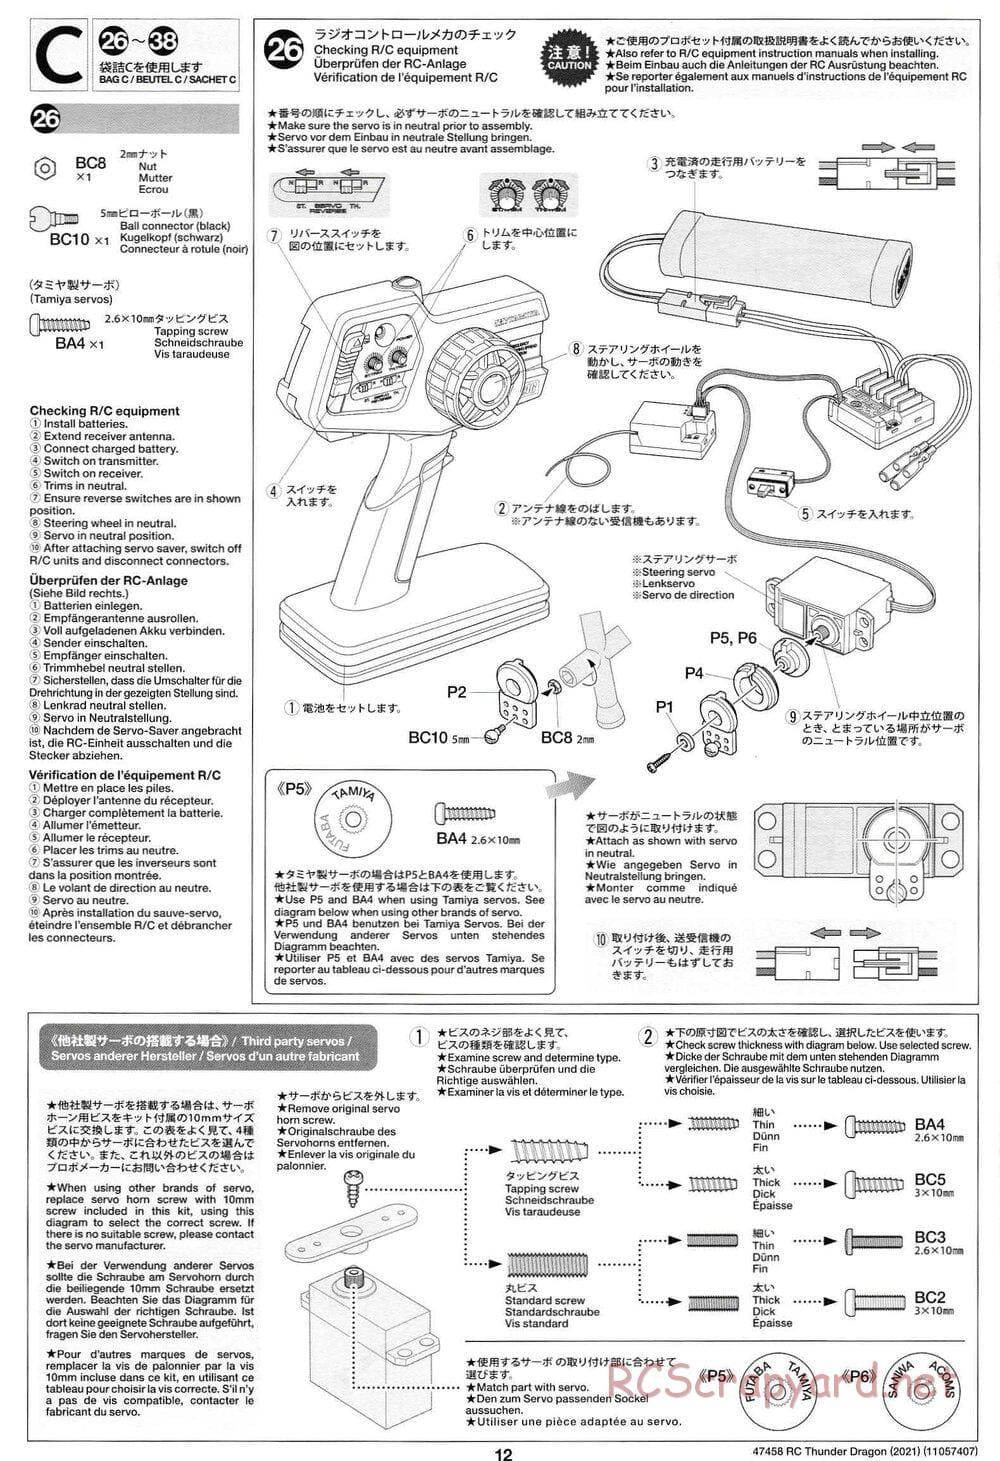 Tamiya - Thunder Dragon (2021) Chassis - Manual - Page 12